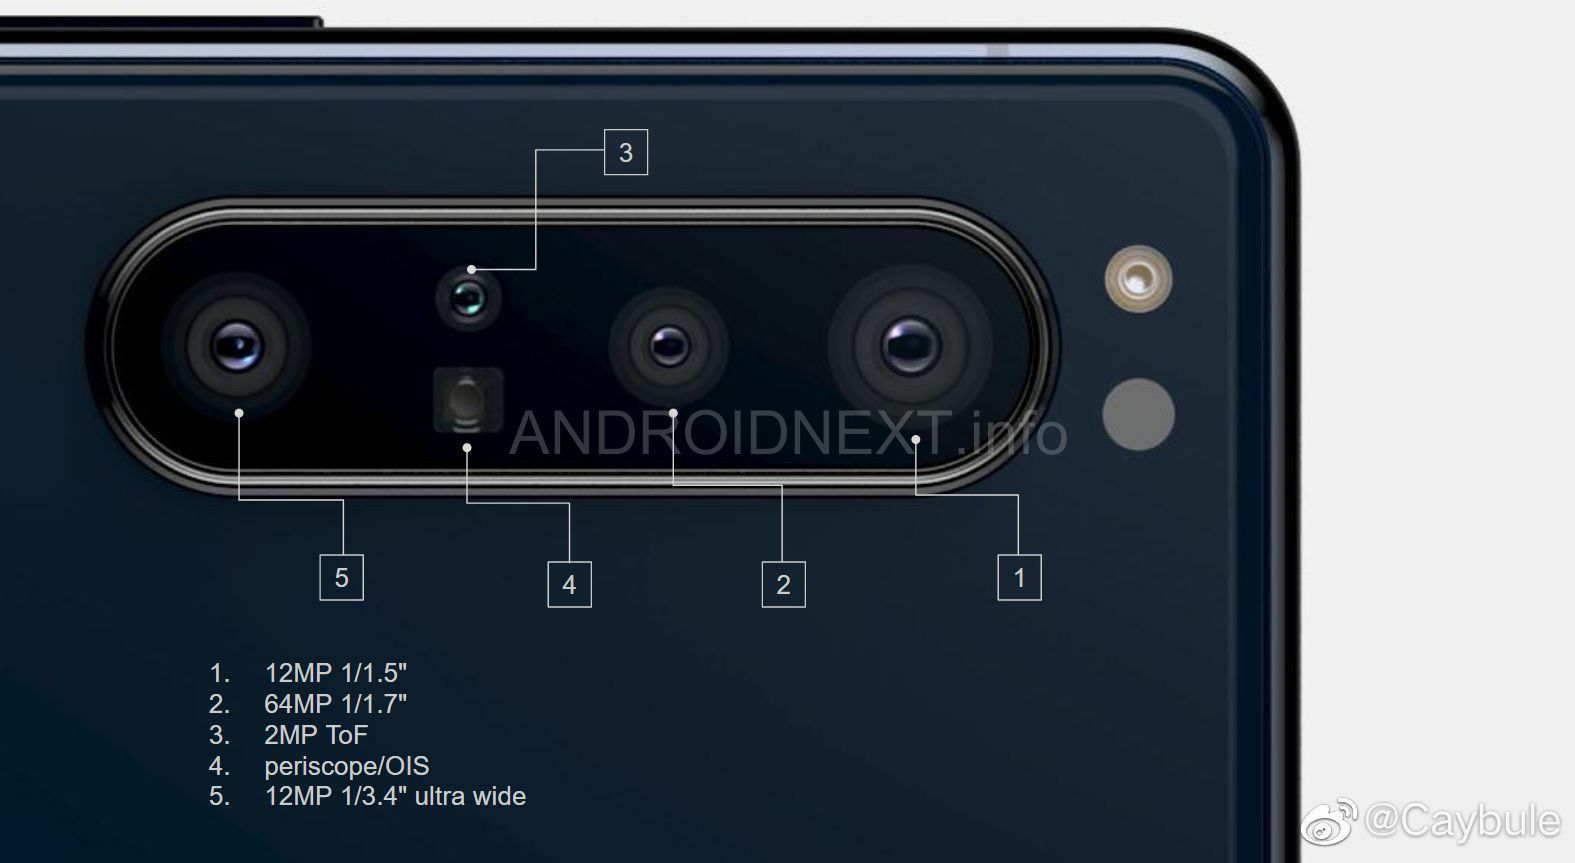 một loại điện thoại thông minh của hãng Sony 2 máy ảnh "width =" 800 "height =" 438